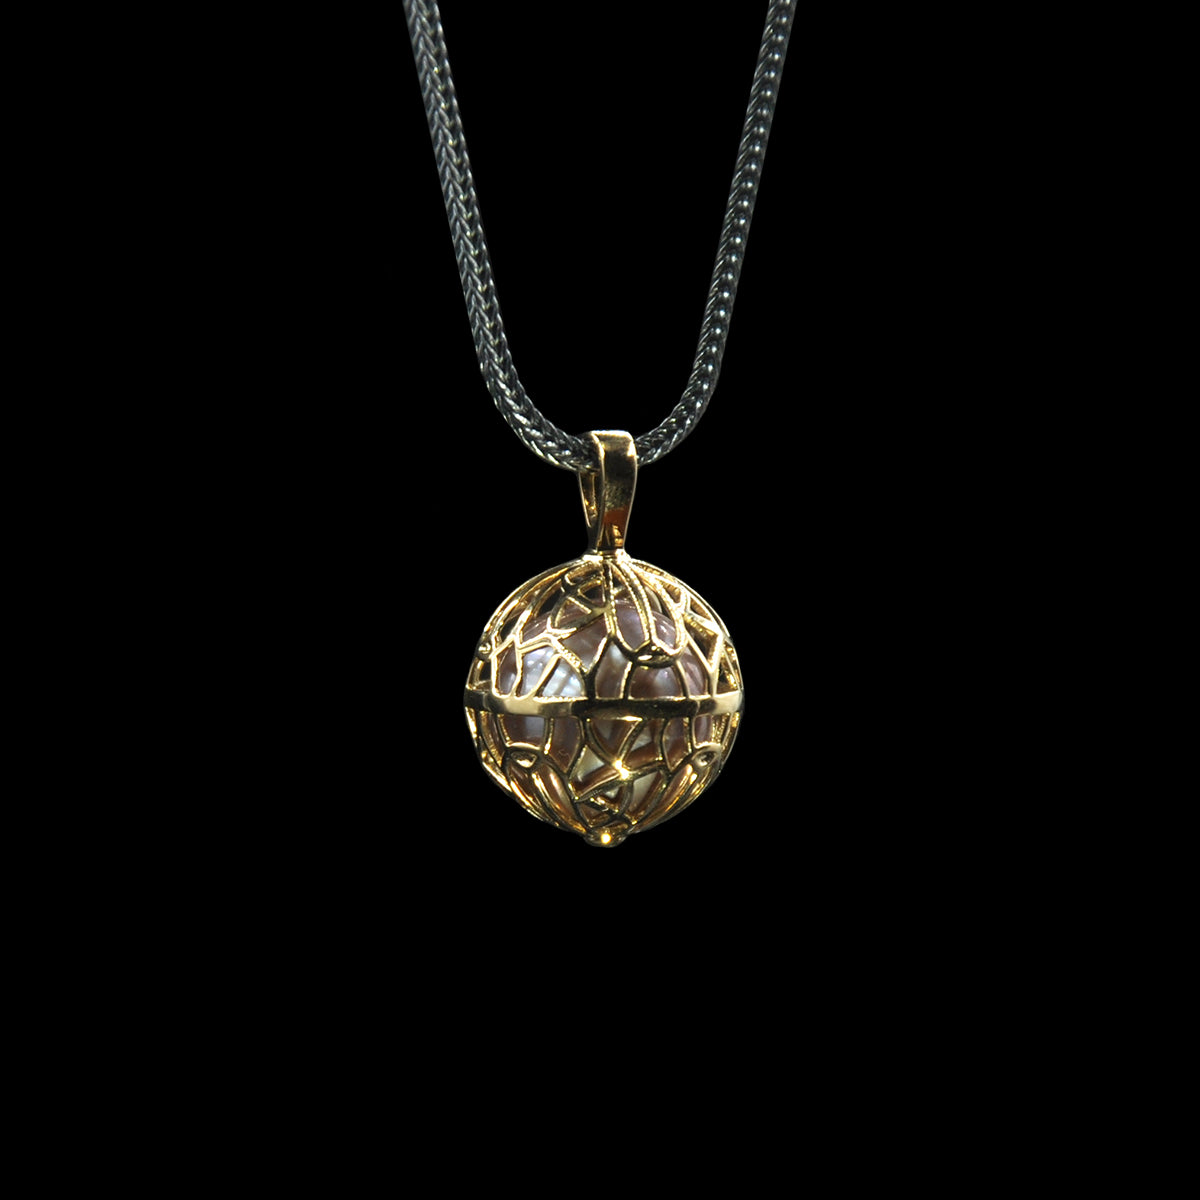 DYQ JEWELRY 18K Gold Pearl Pendant Men's Necklace Men's Necklace Couple